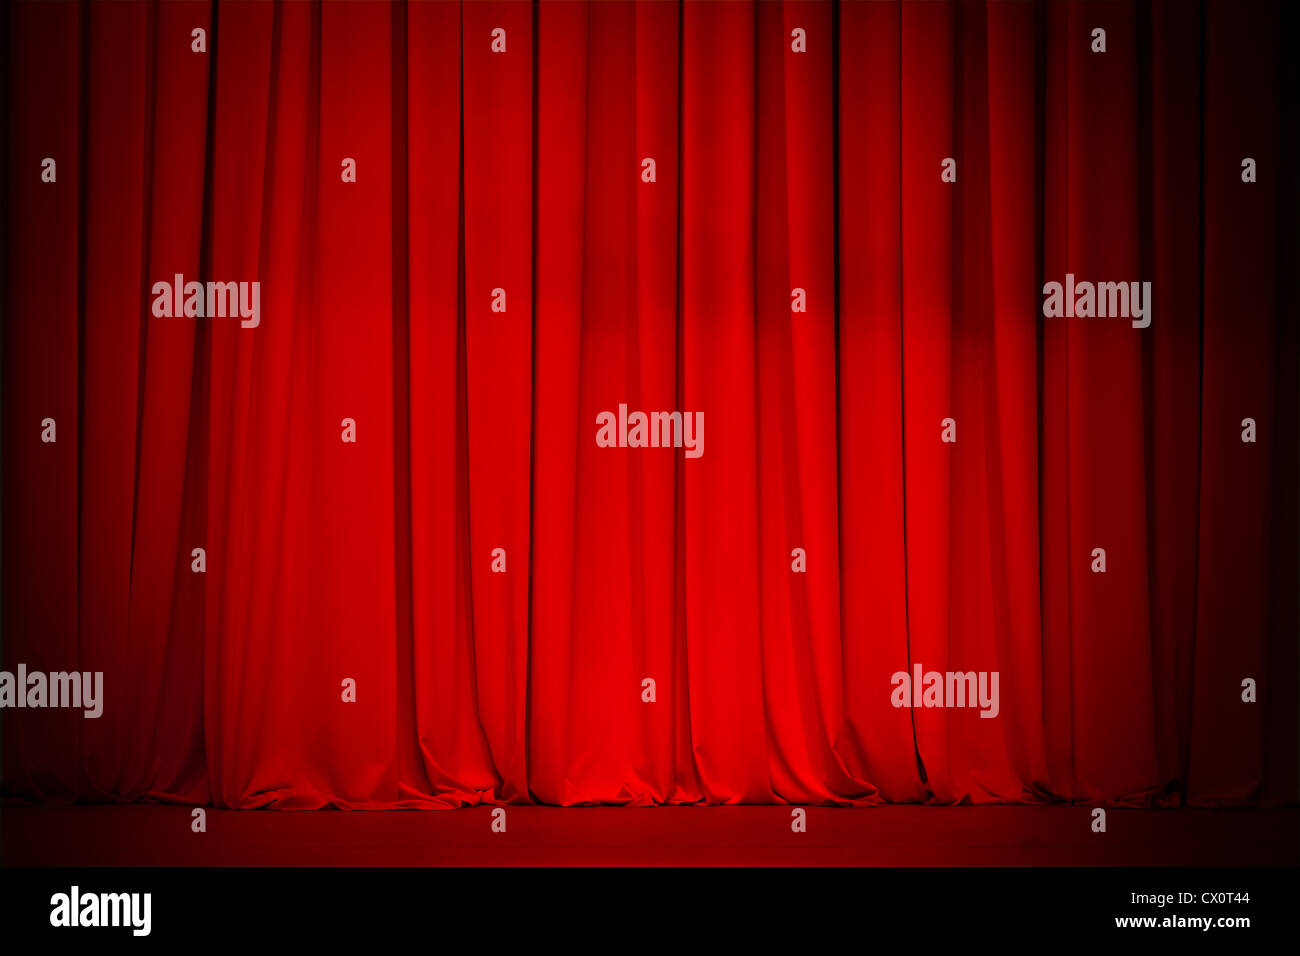 La tenda rossa film immagini e fotografie stock ad alta risoluzione - Alamy